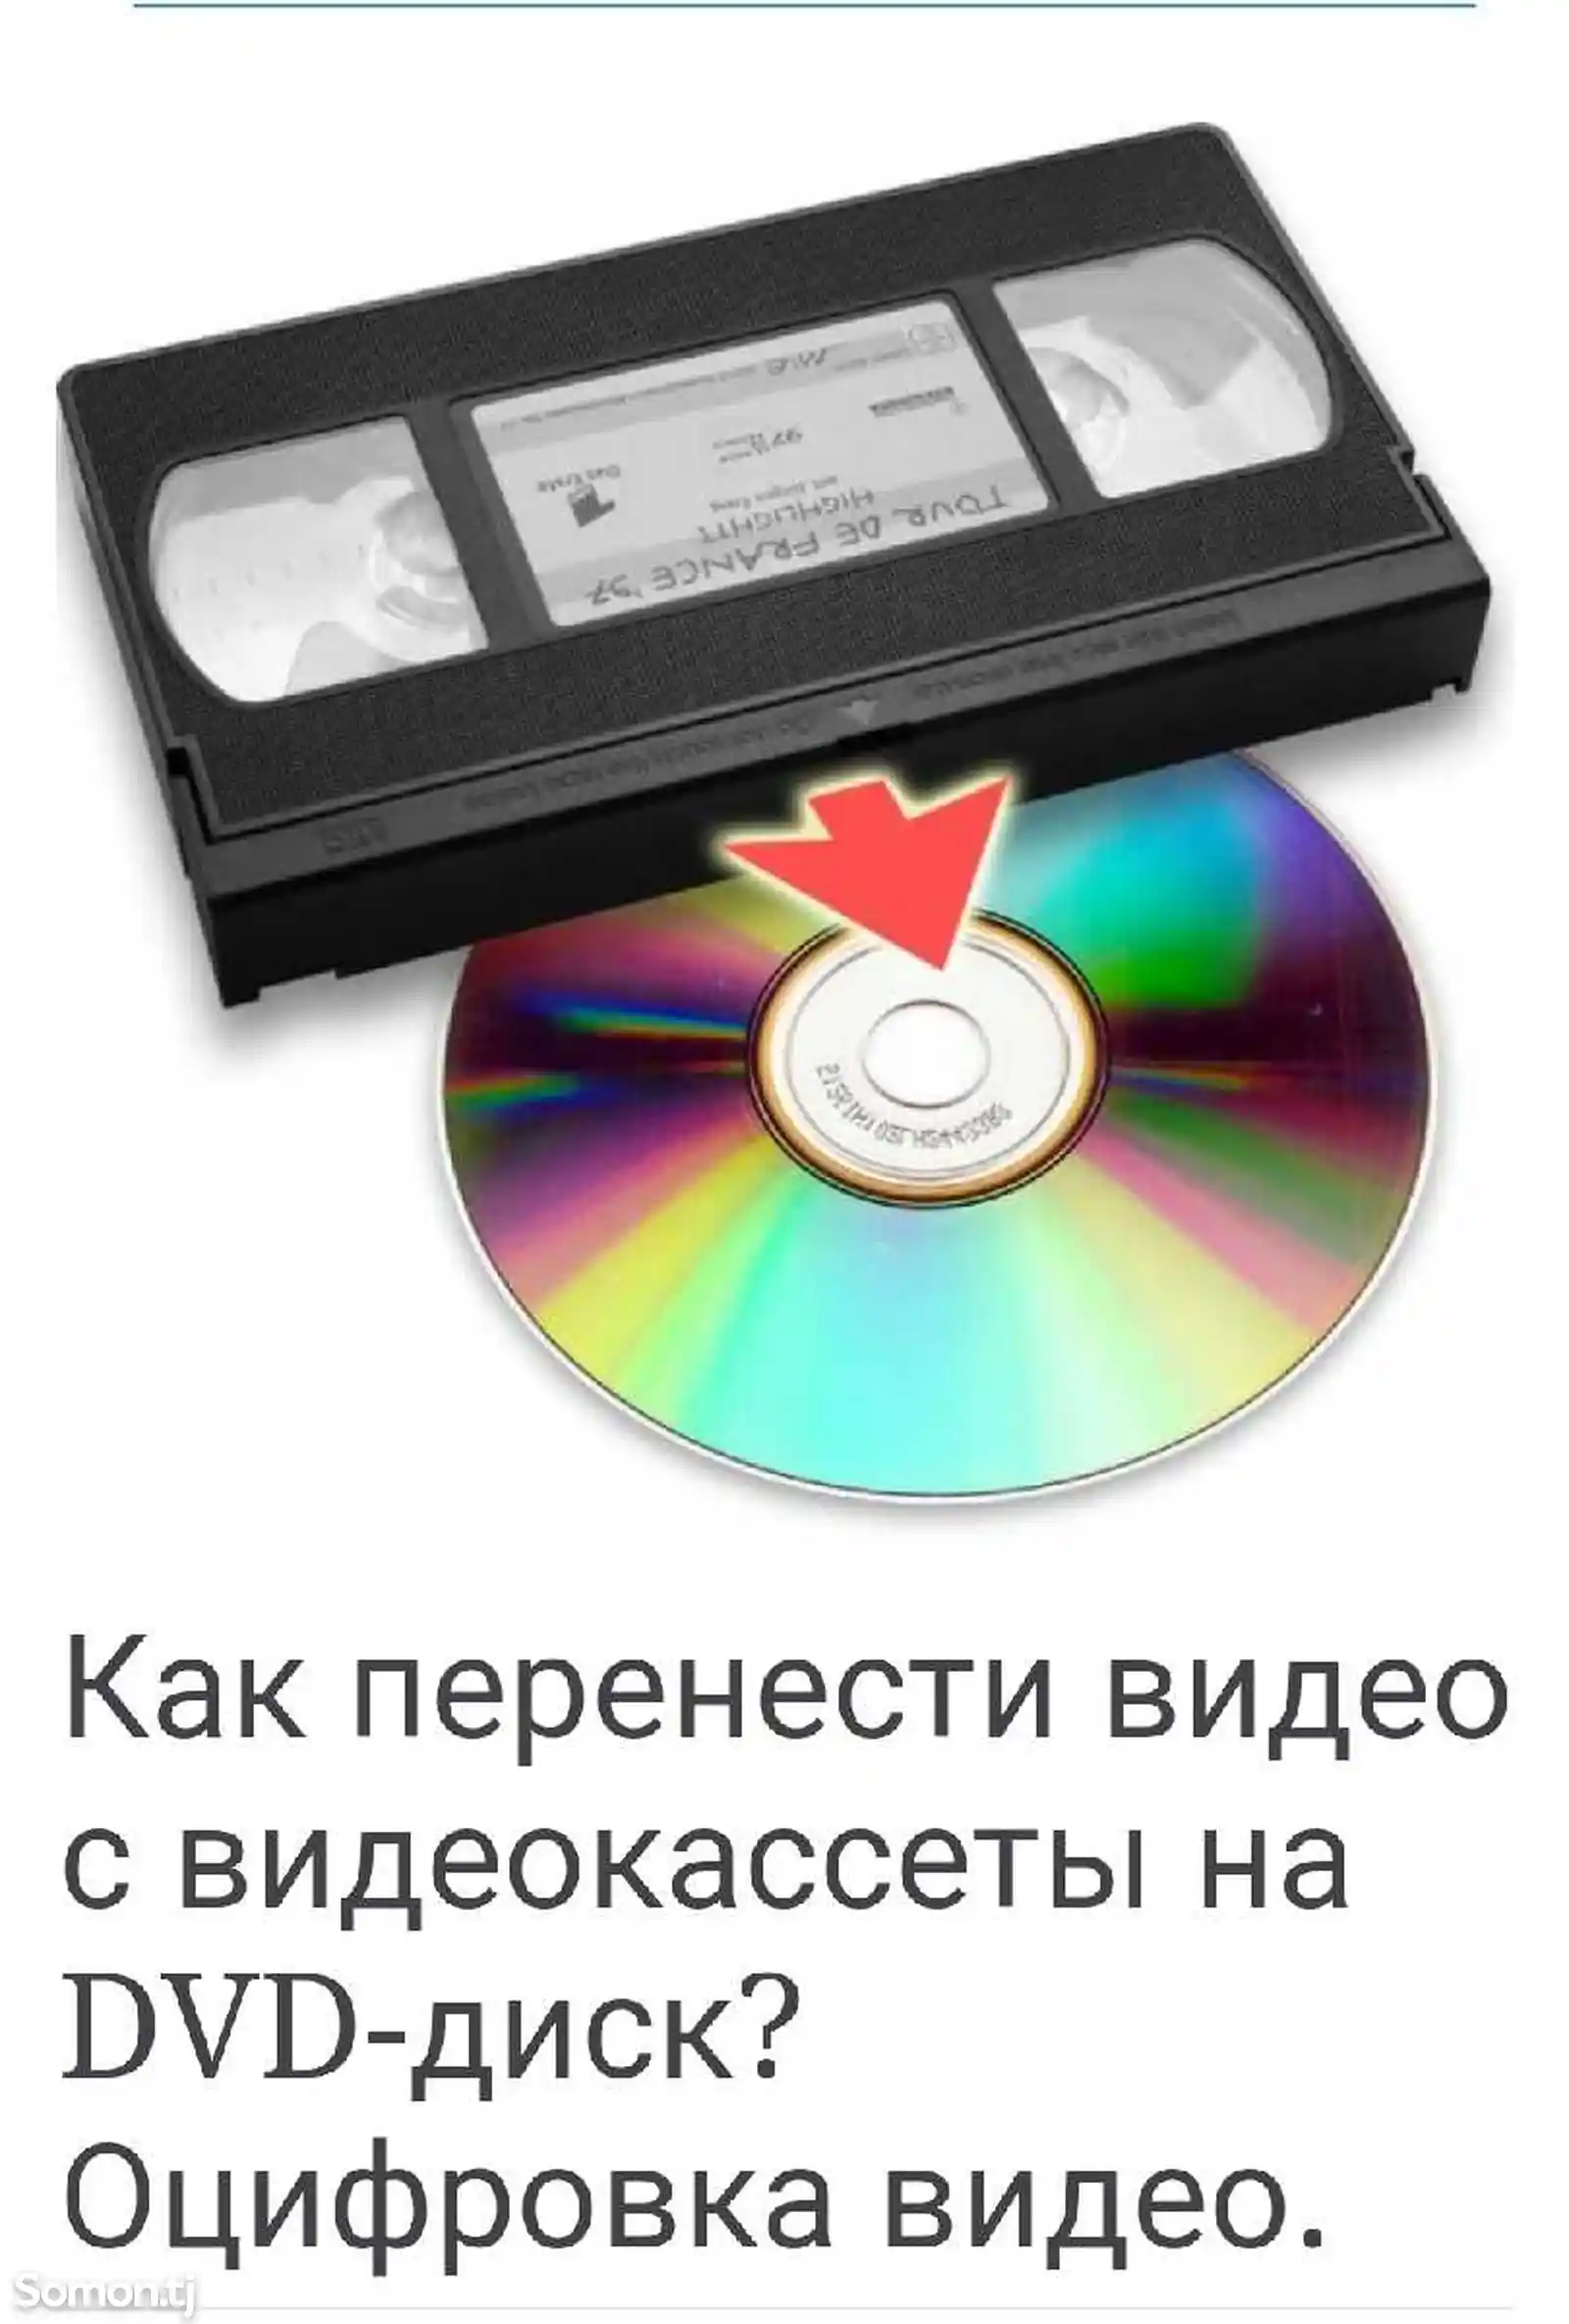 Запись с видеокассеты на диск